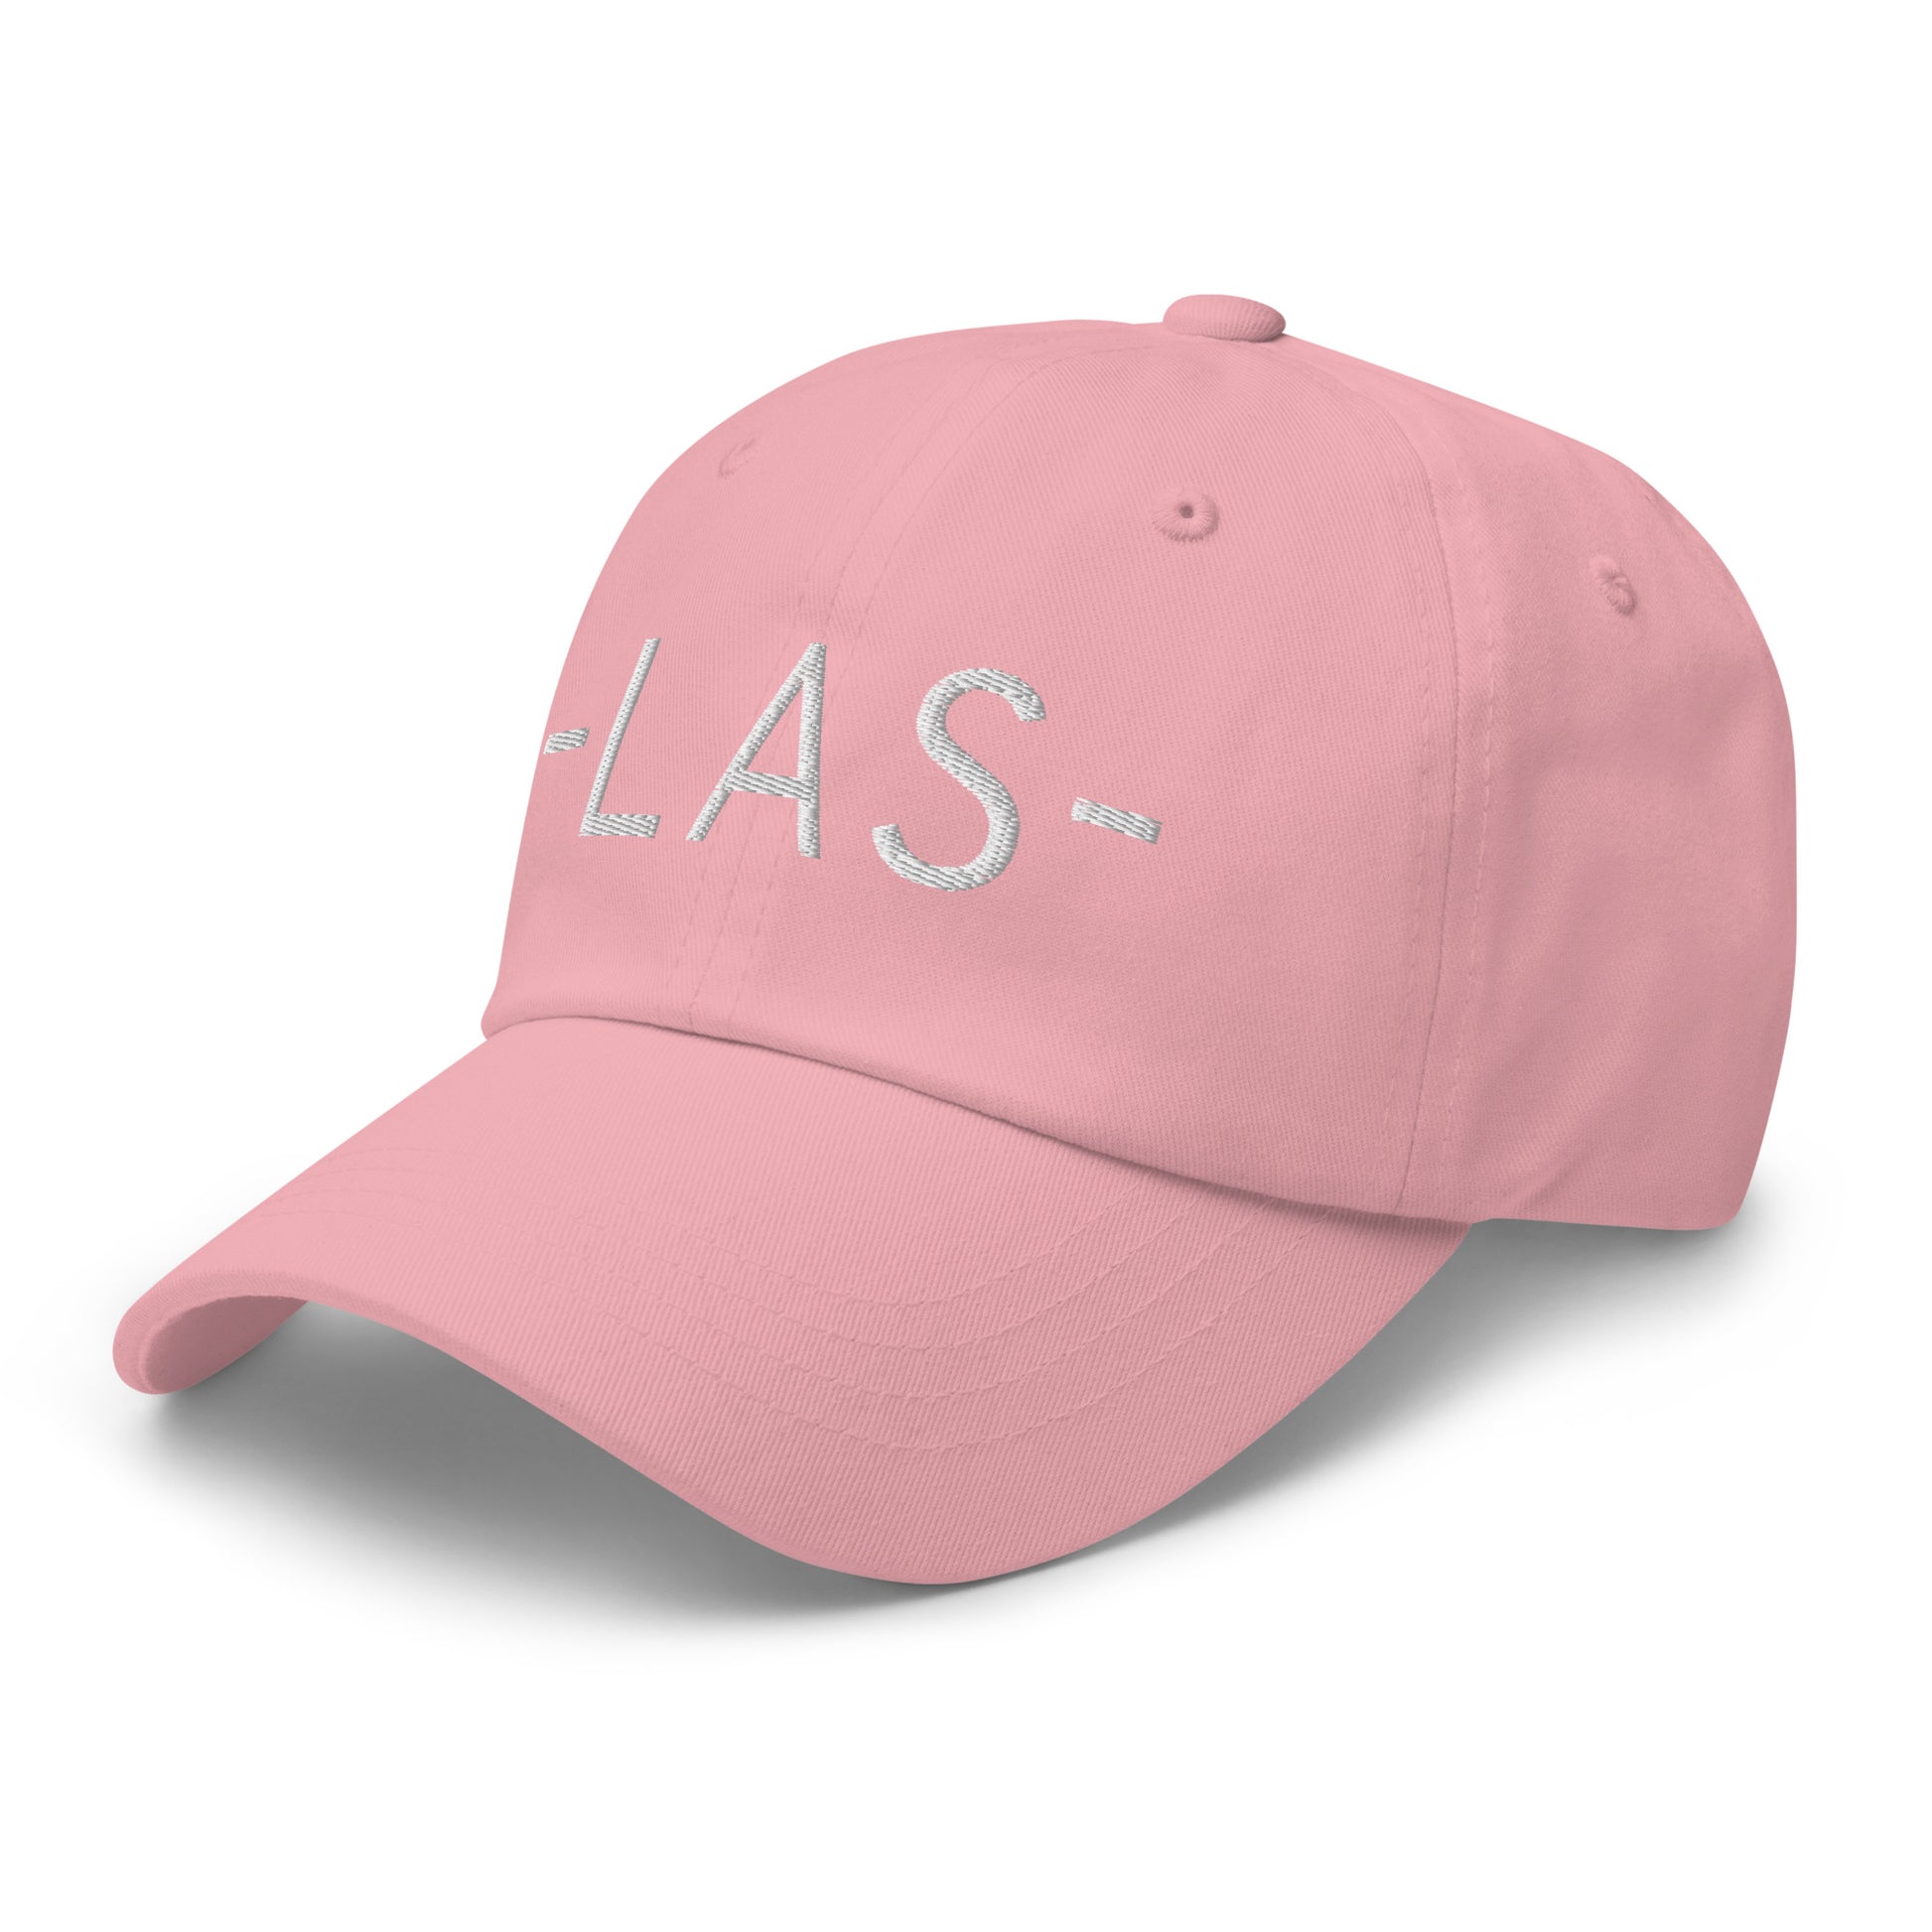 Souvenir Baseball Cap - White • LAS Las Vegas • YHM Designs - Image 26